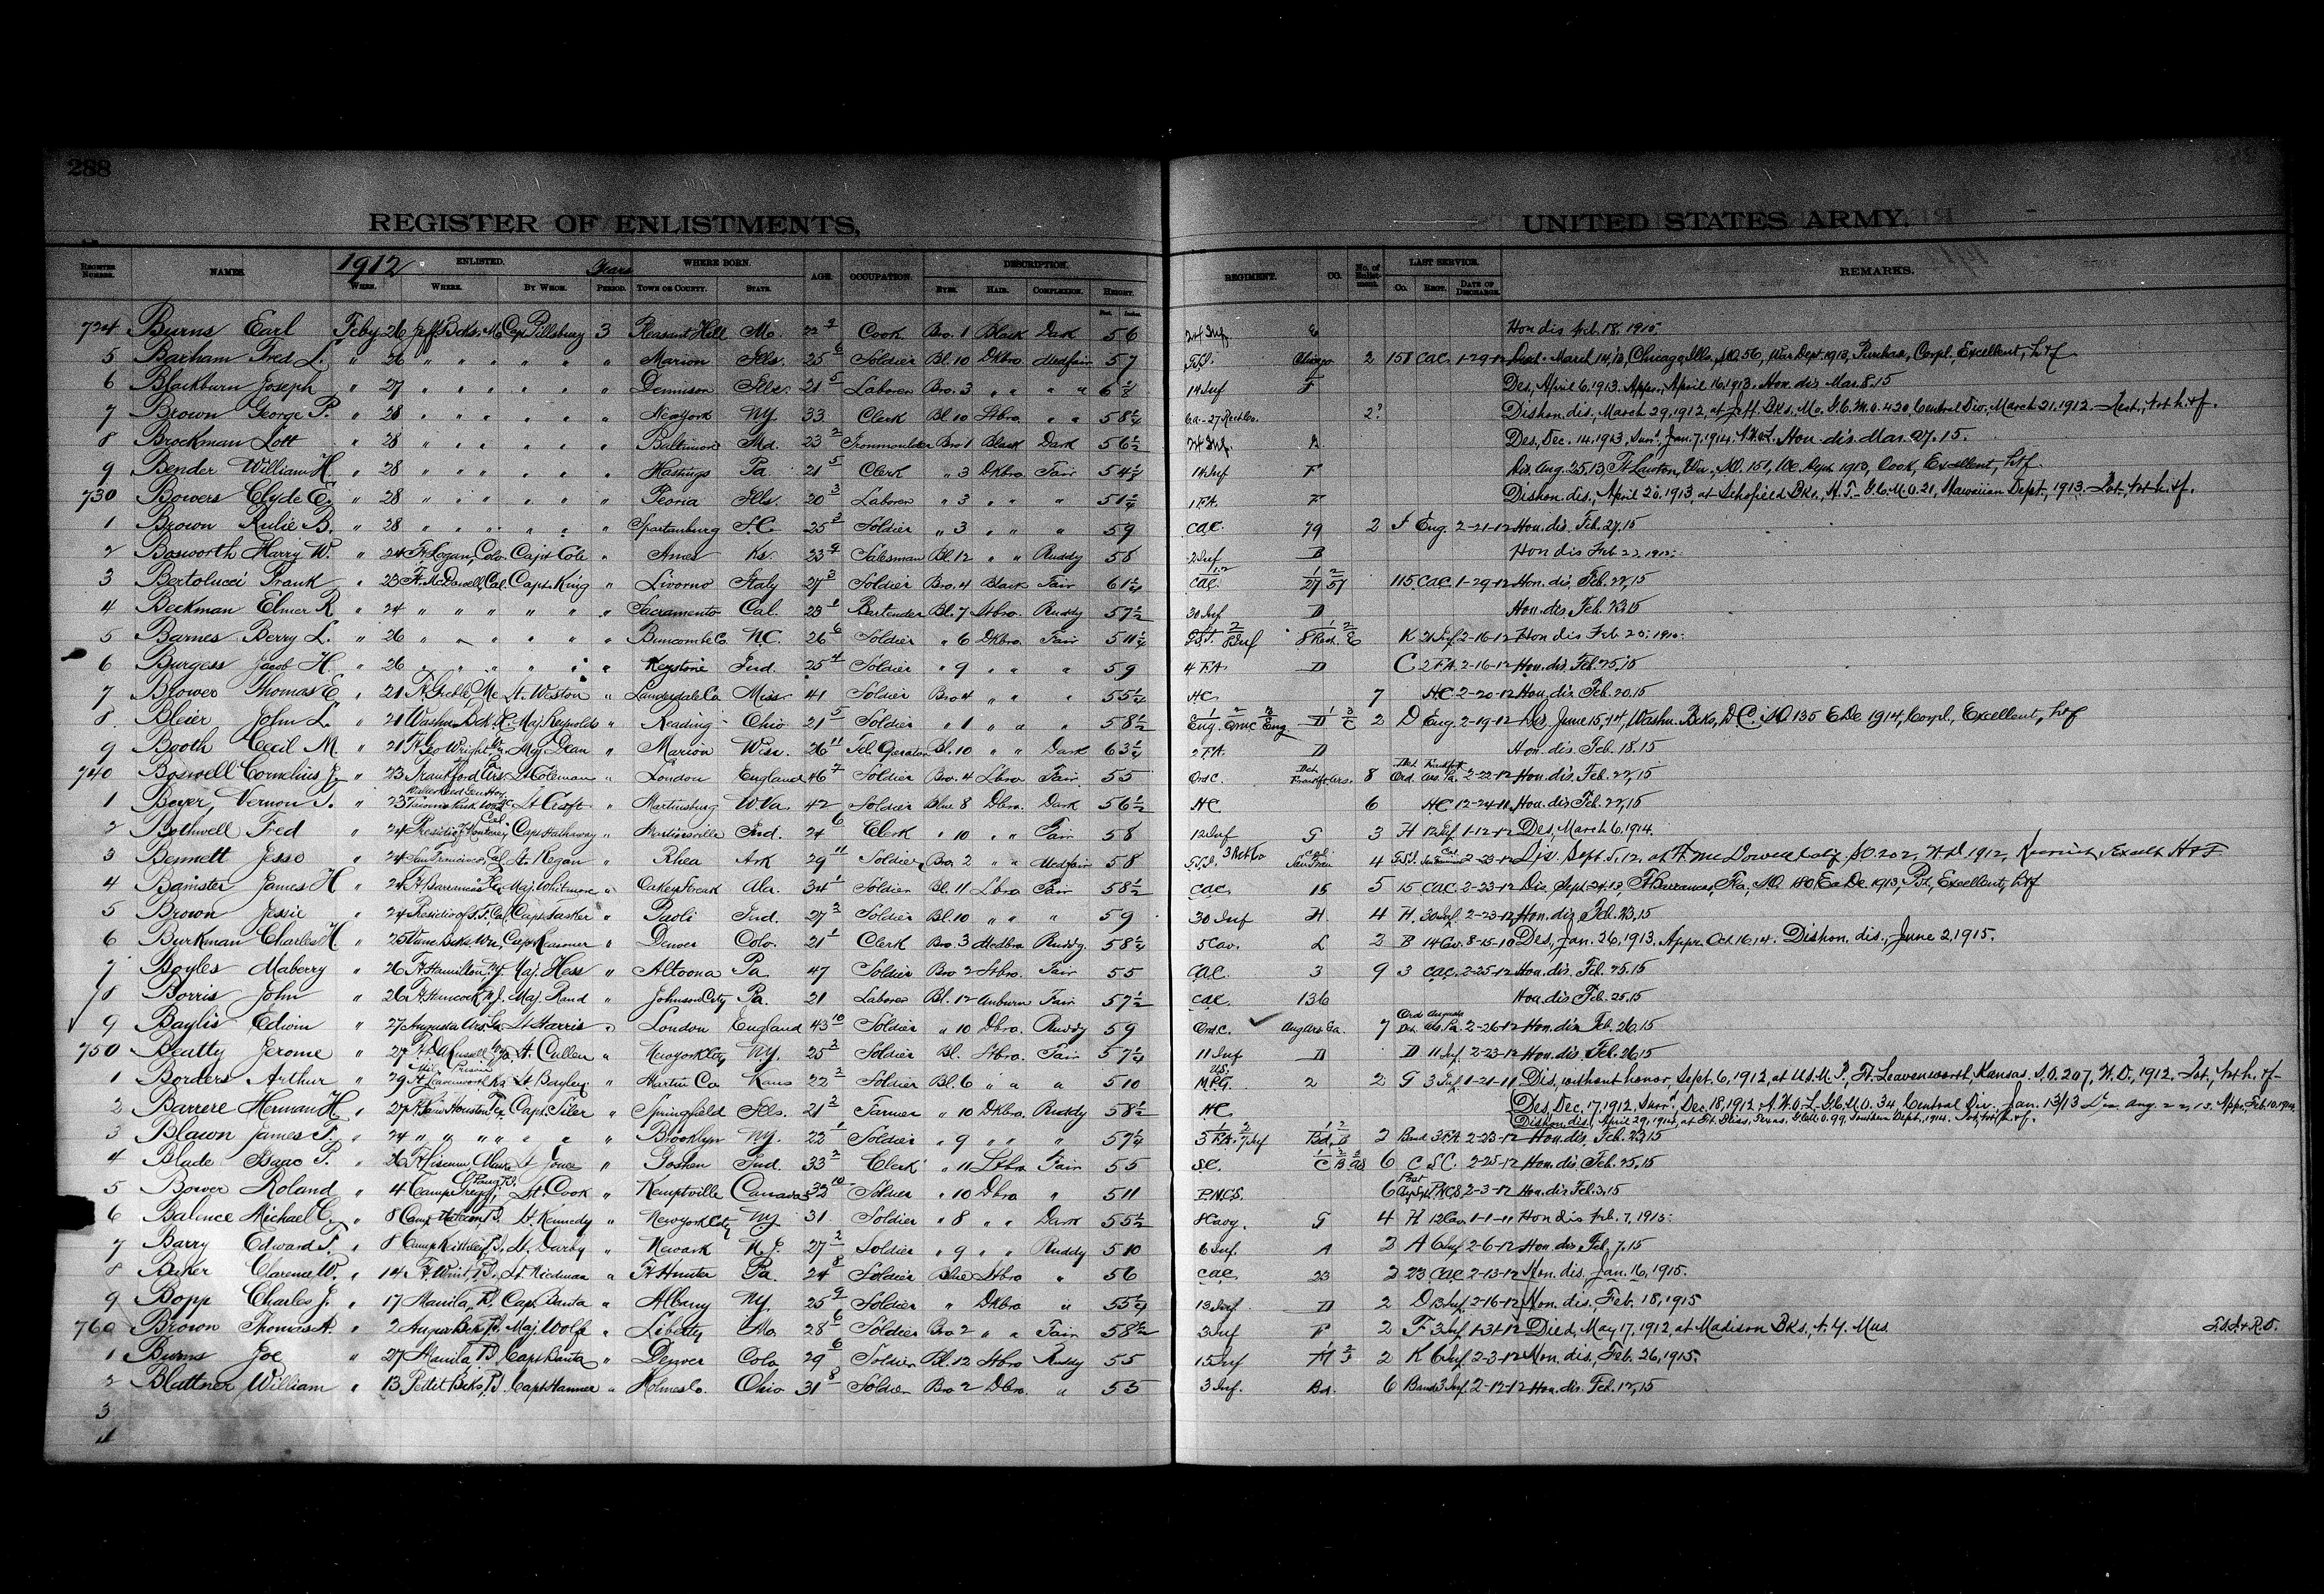 1912 Enlistment Register, John Borris, line 25